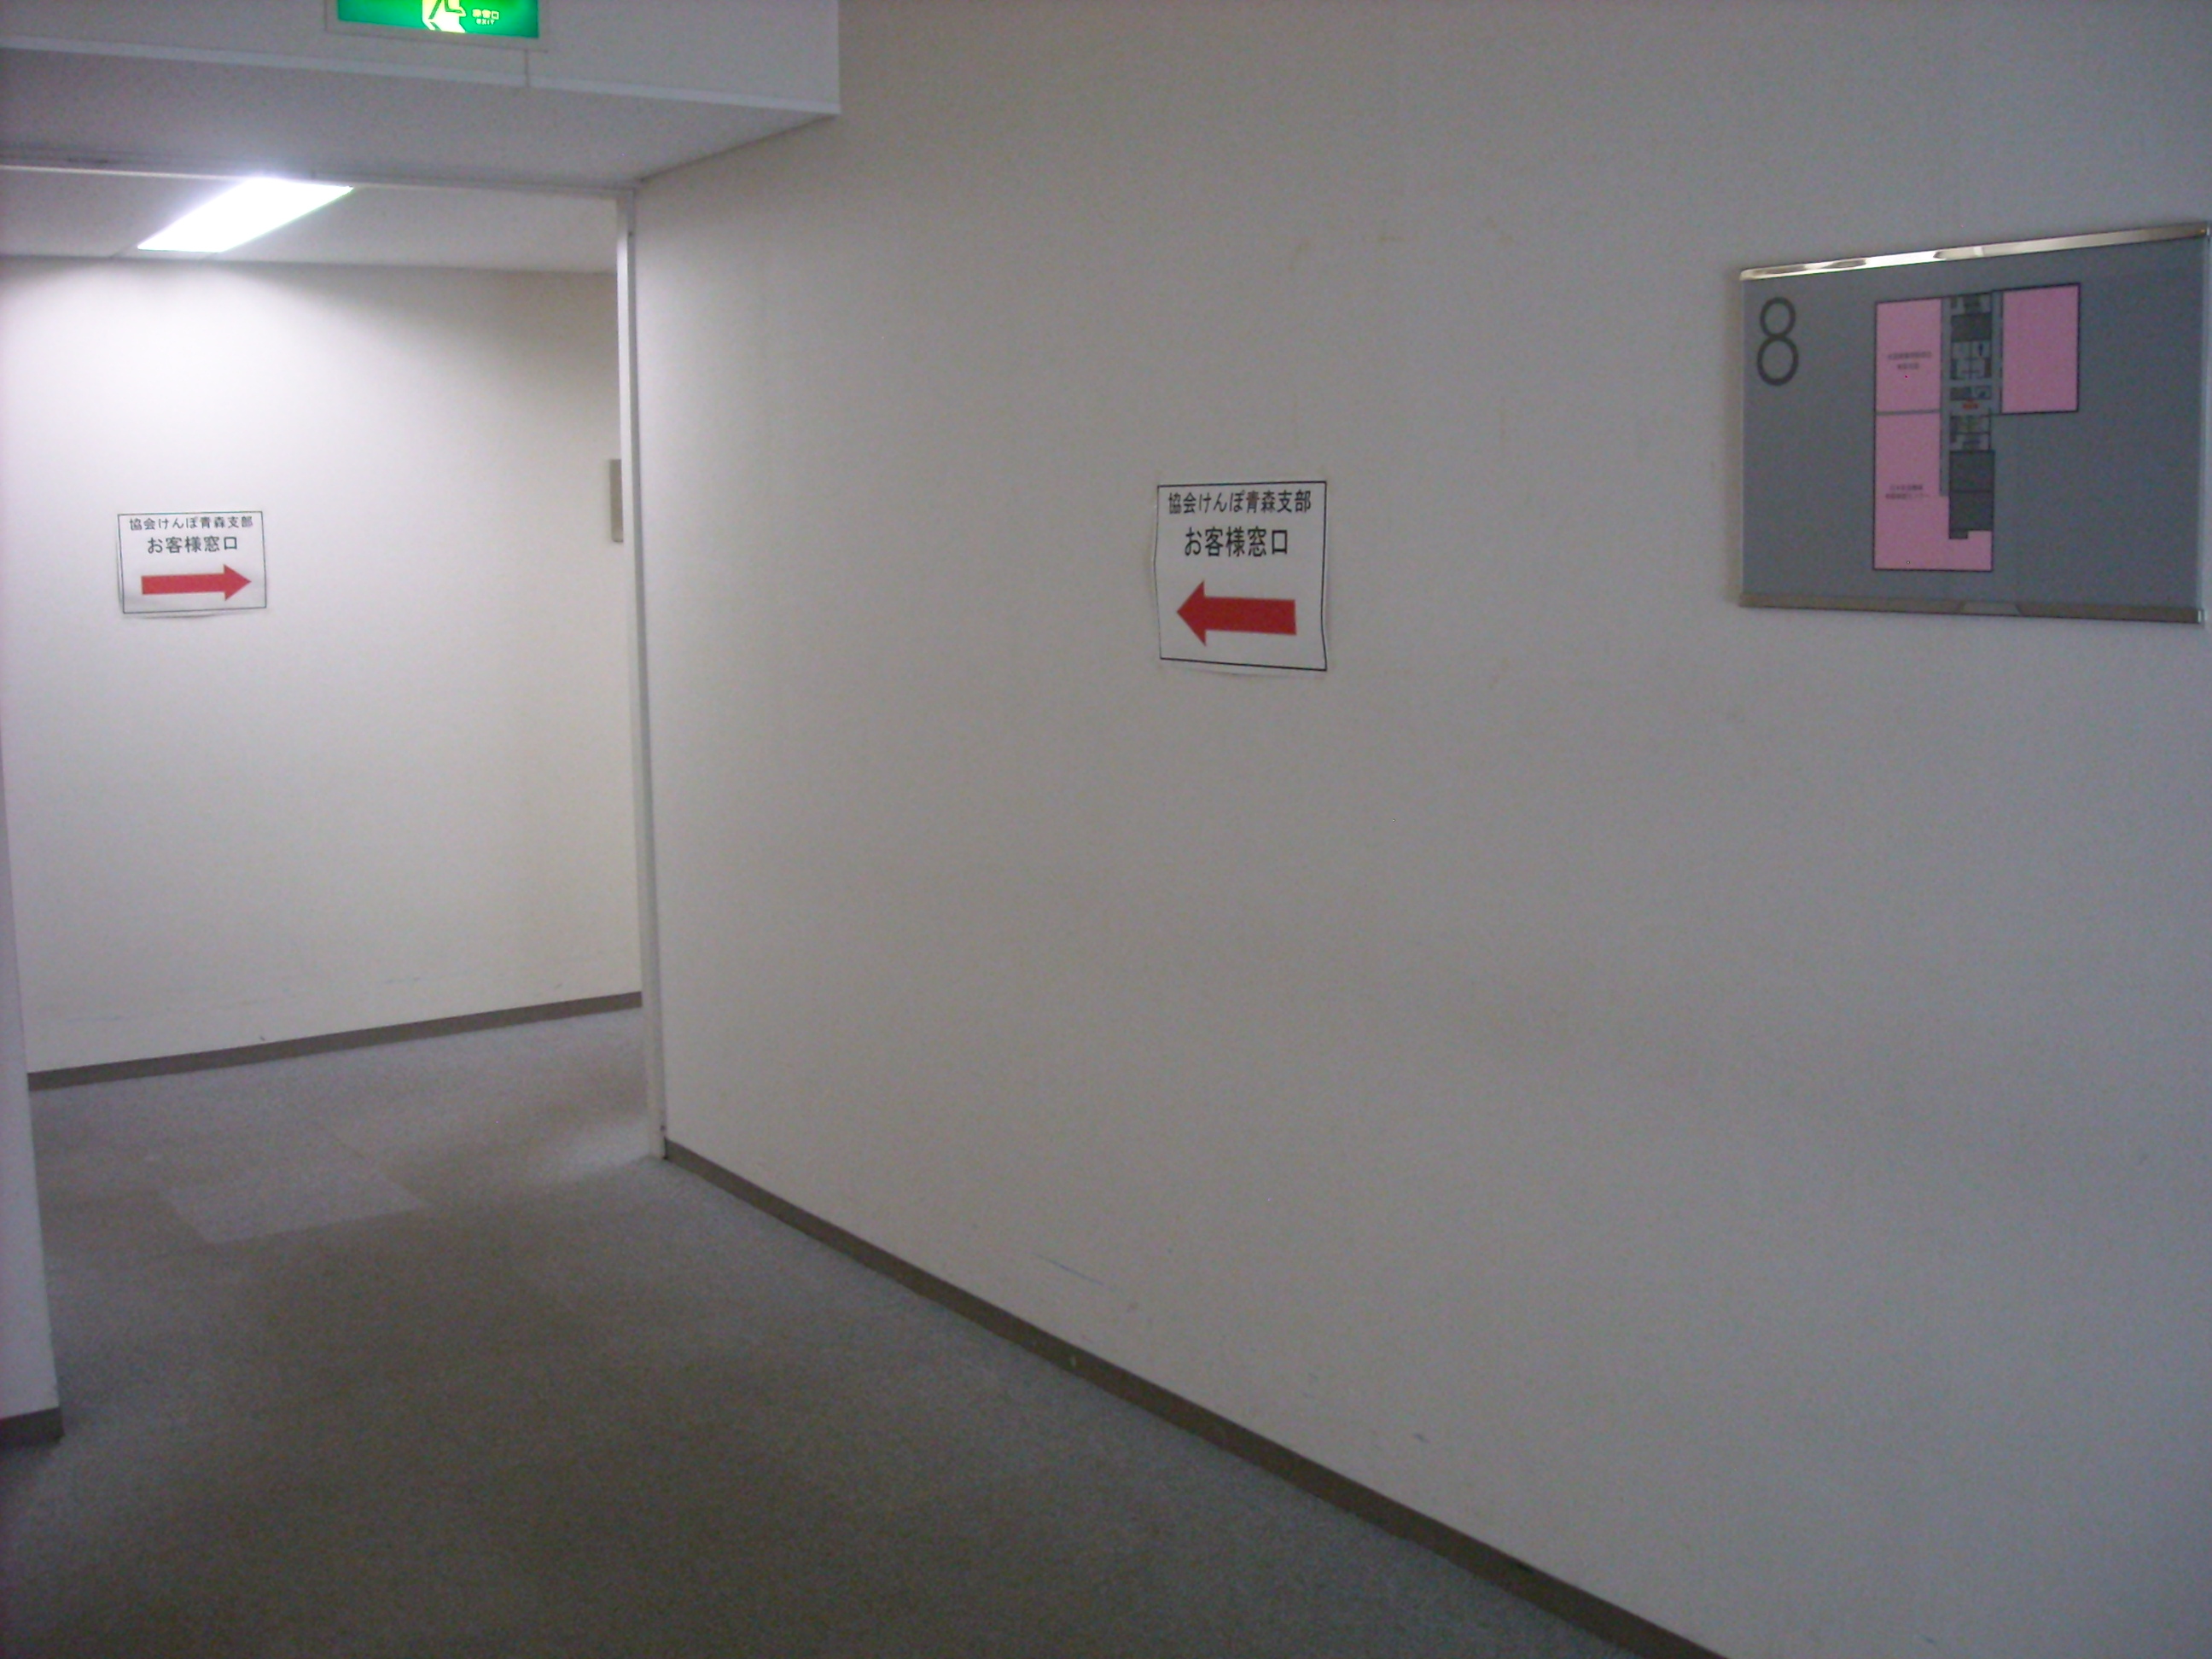 8階でエレベーターを降りたら、左側へ